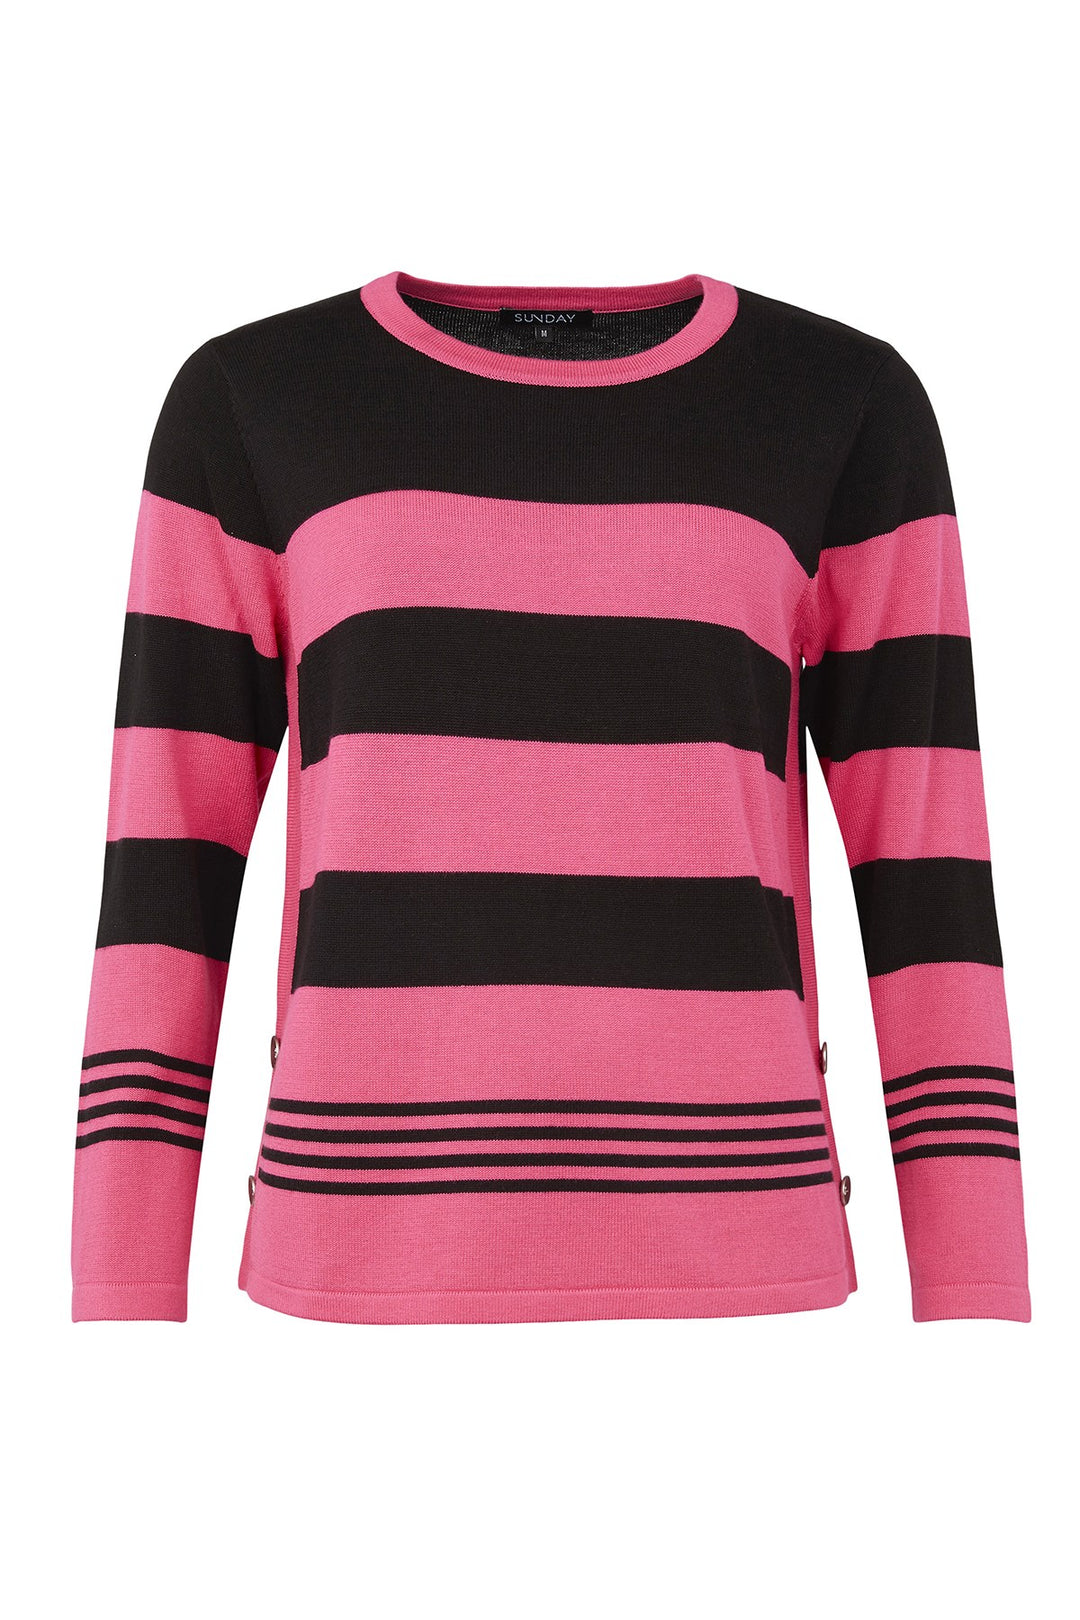 Sunday 6748 Pink and Black Stripe Jumper Front | Dotique